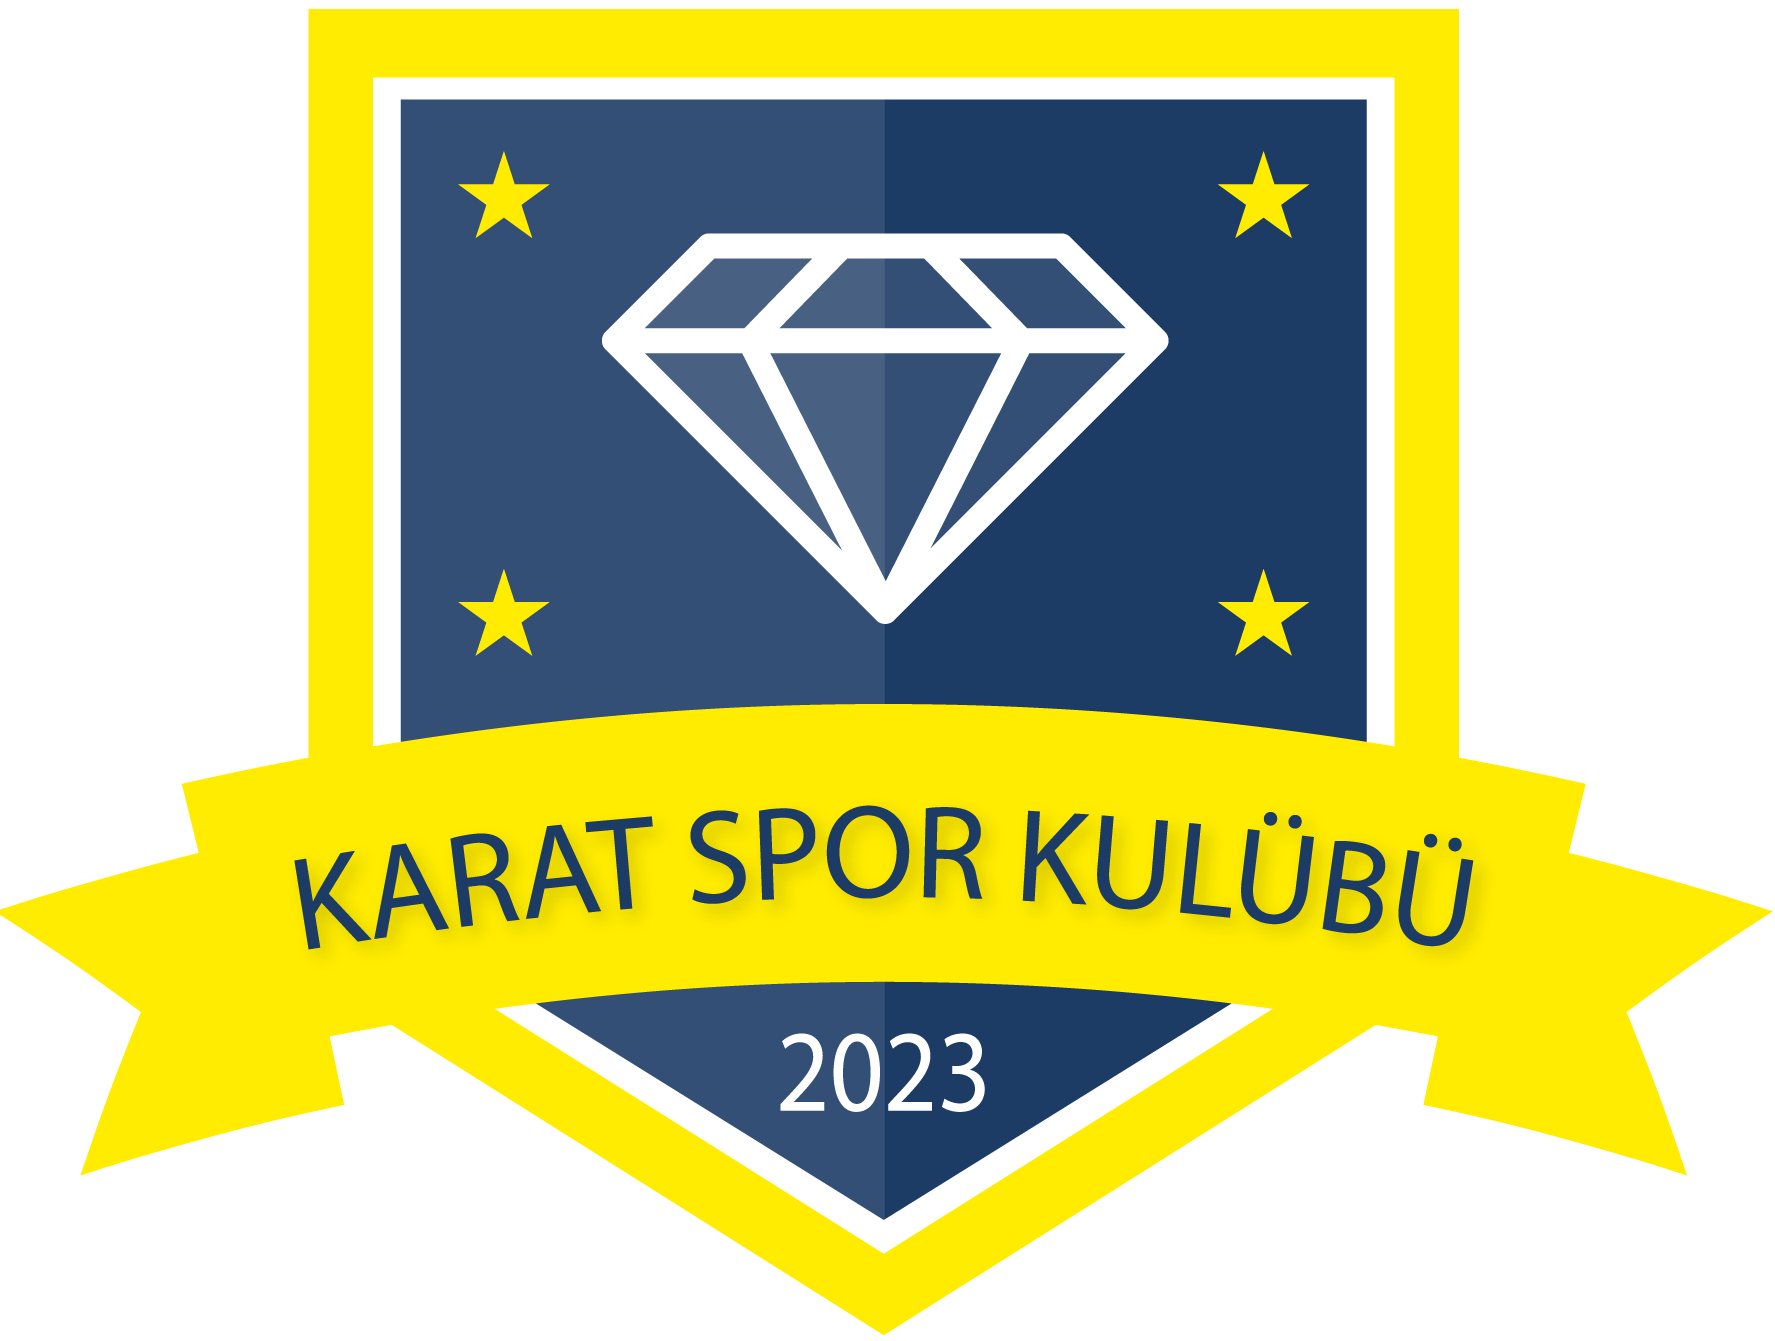 Fenerbahçe Sultanbeyli - Karat Spor Kulübü